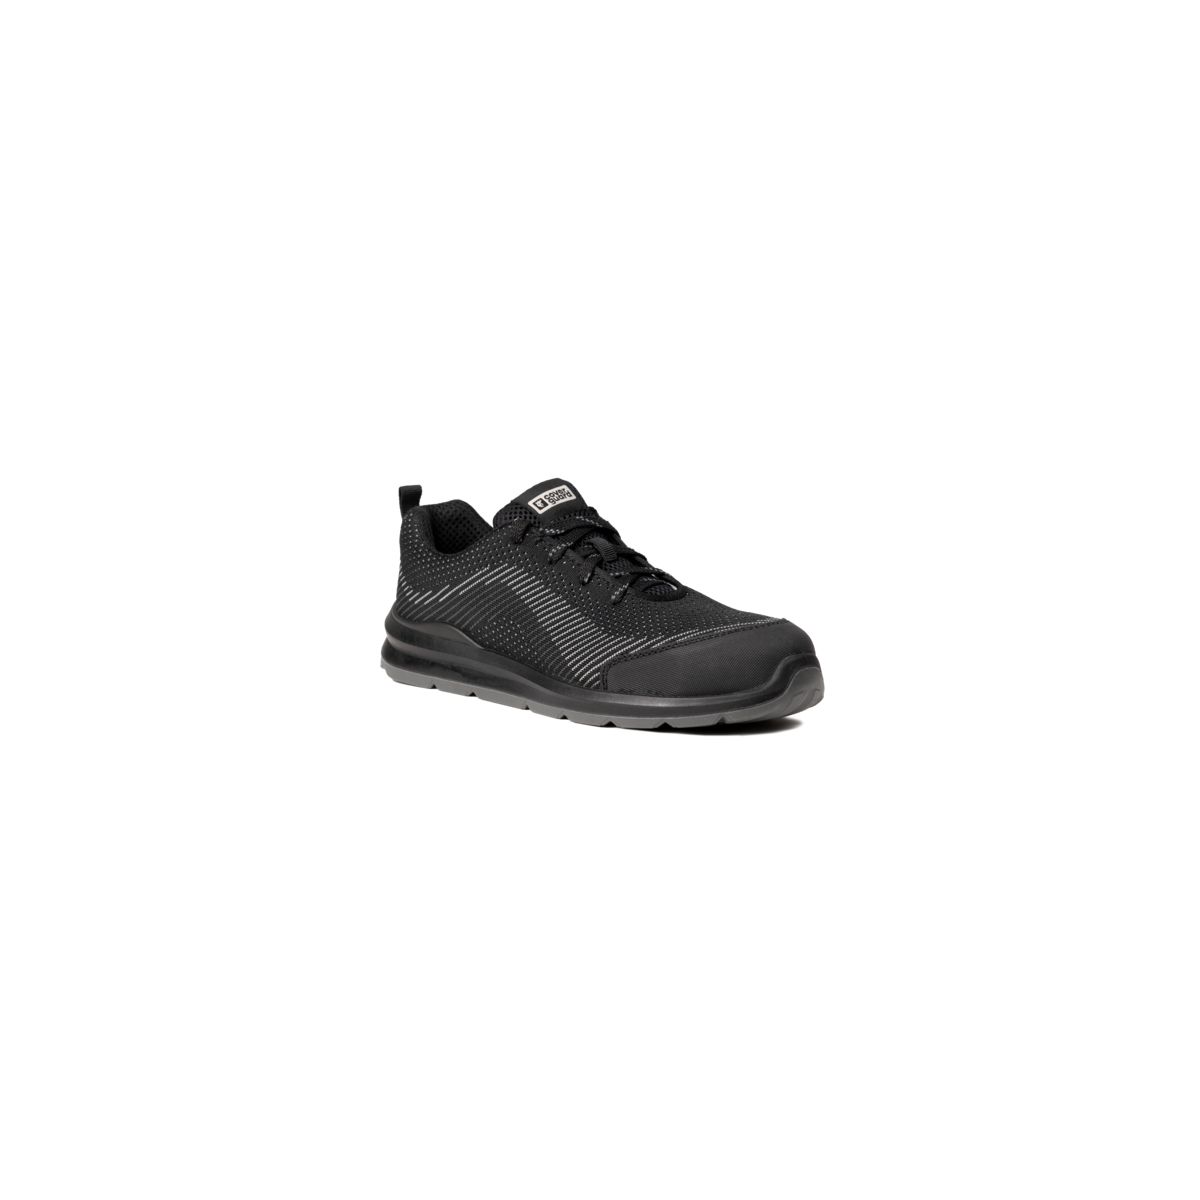 Chaussures de sécurité MILERITE S1P Basse Noir/Gris - COVERGUARD - Taille 40 0